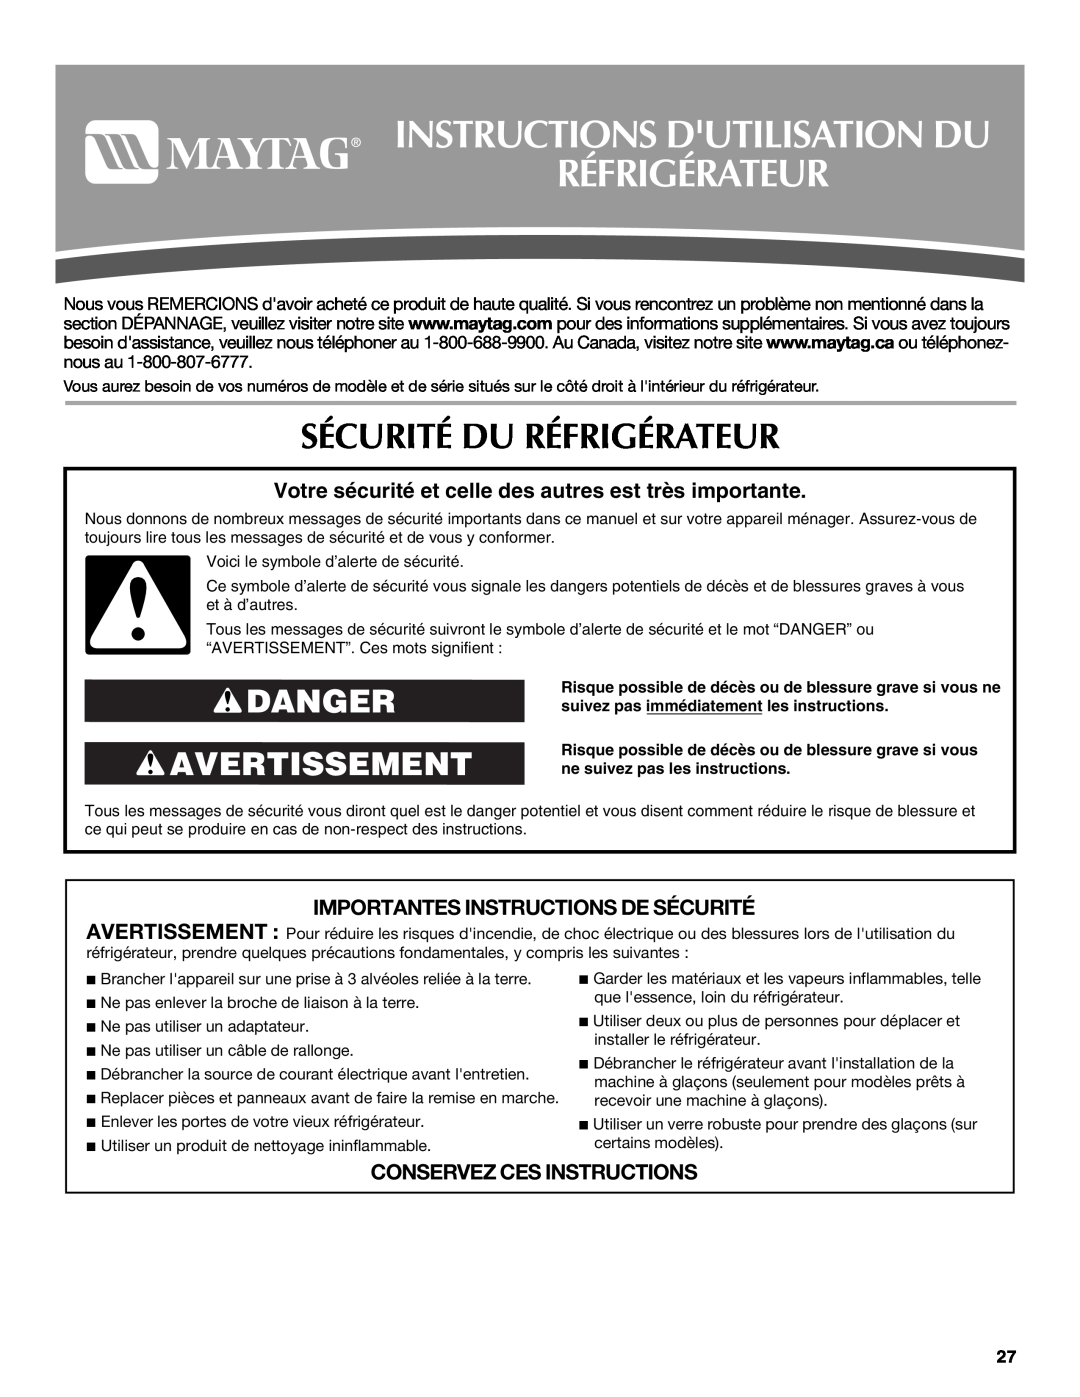 Maytag T2RFWG2, T1WG2L Instructions Dutilisation Du Réfrigérateur, Sécurité Du Réfrigérateur, Danger Avertissement 